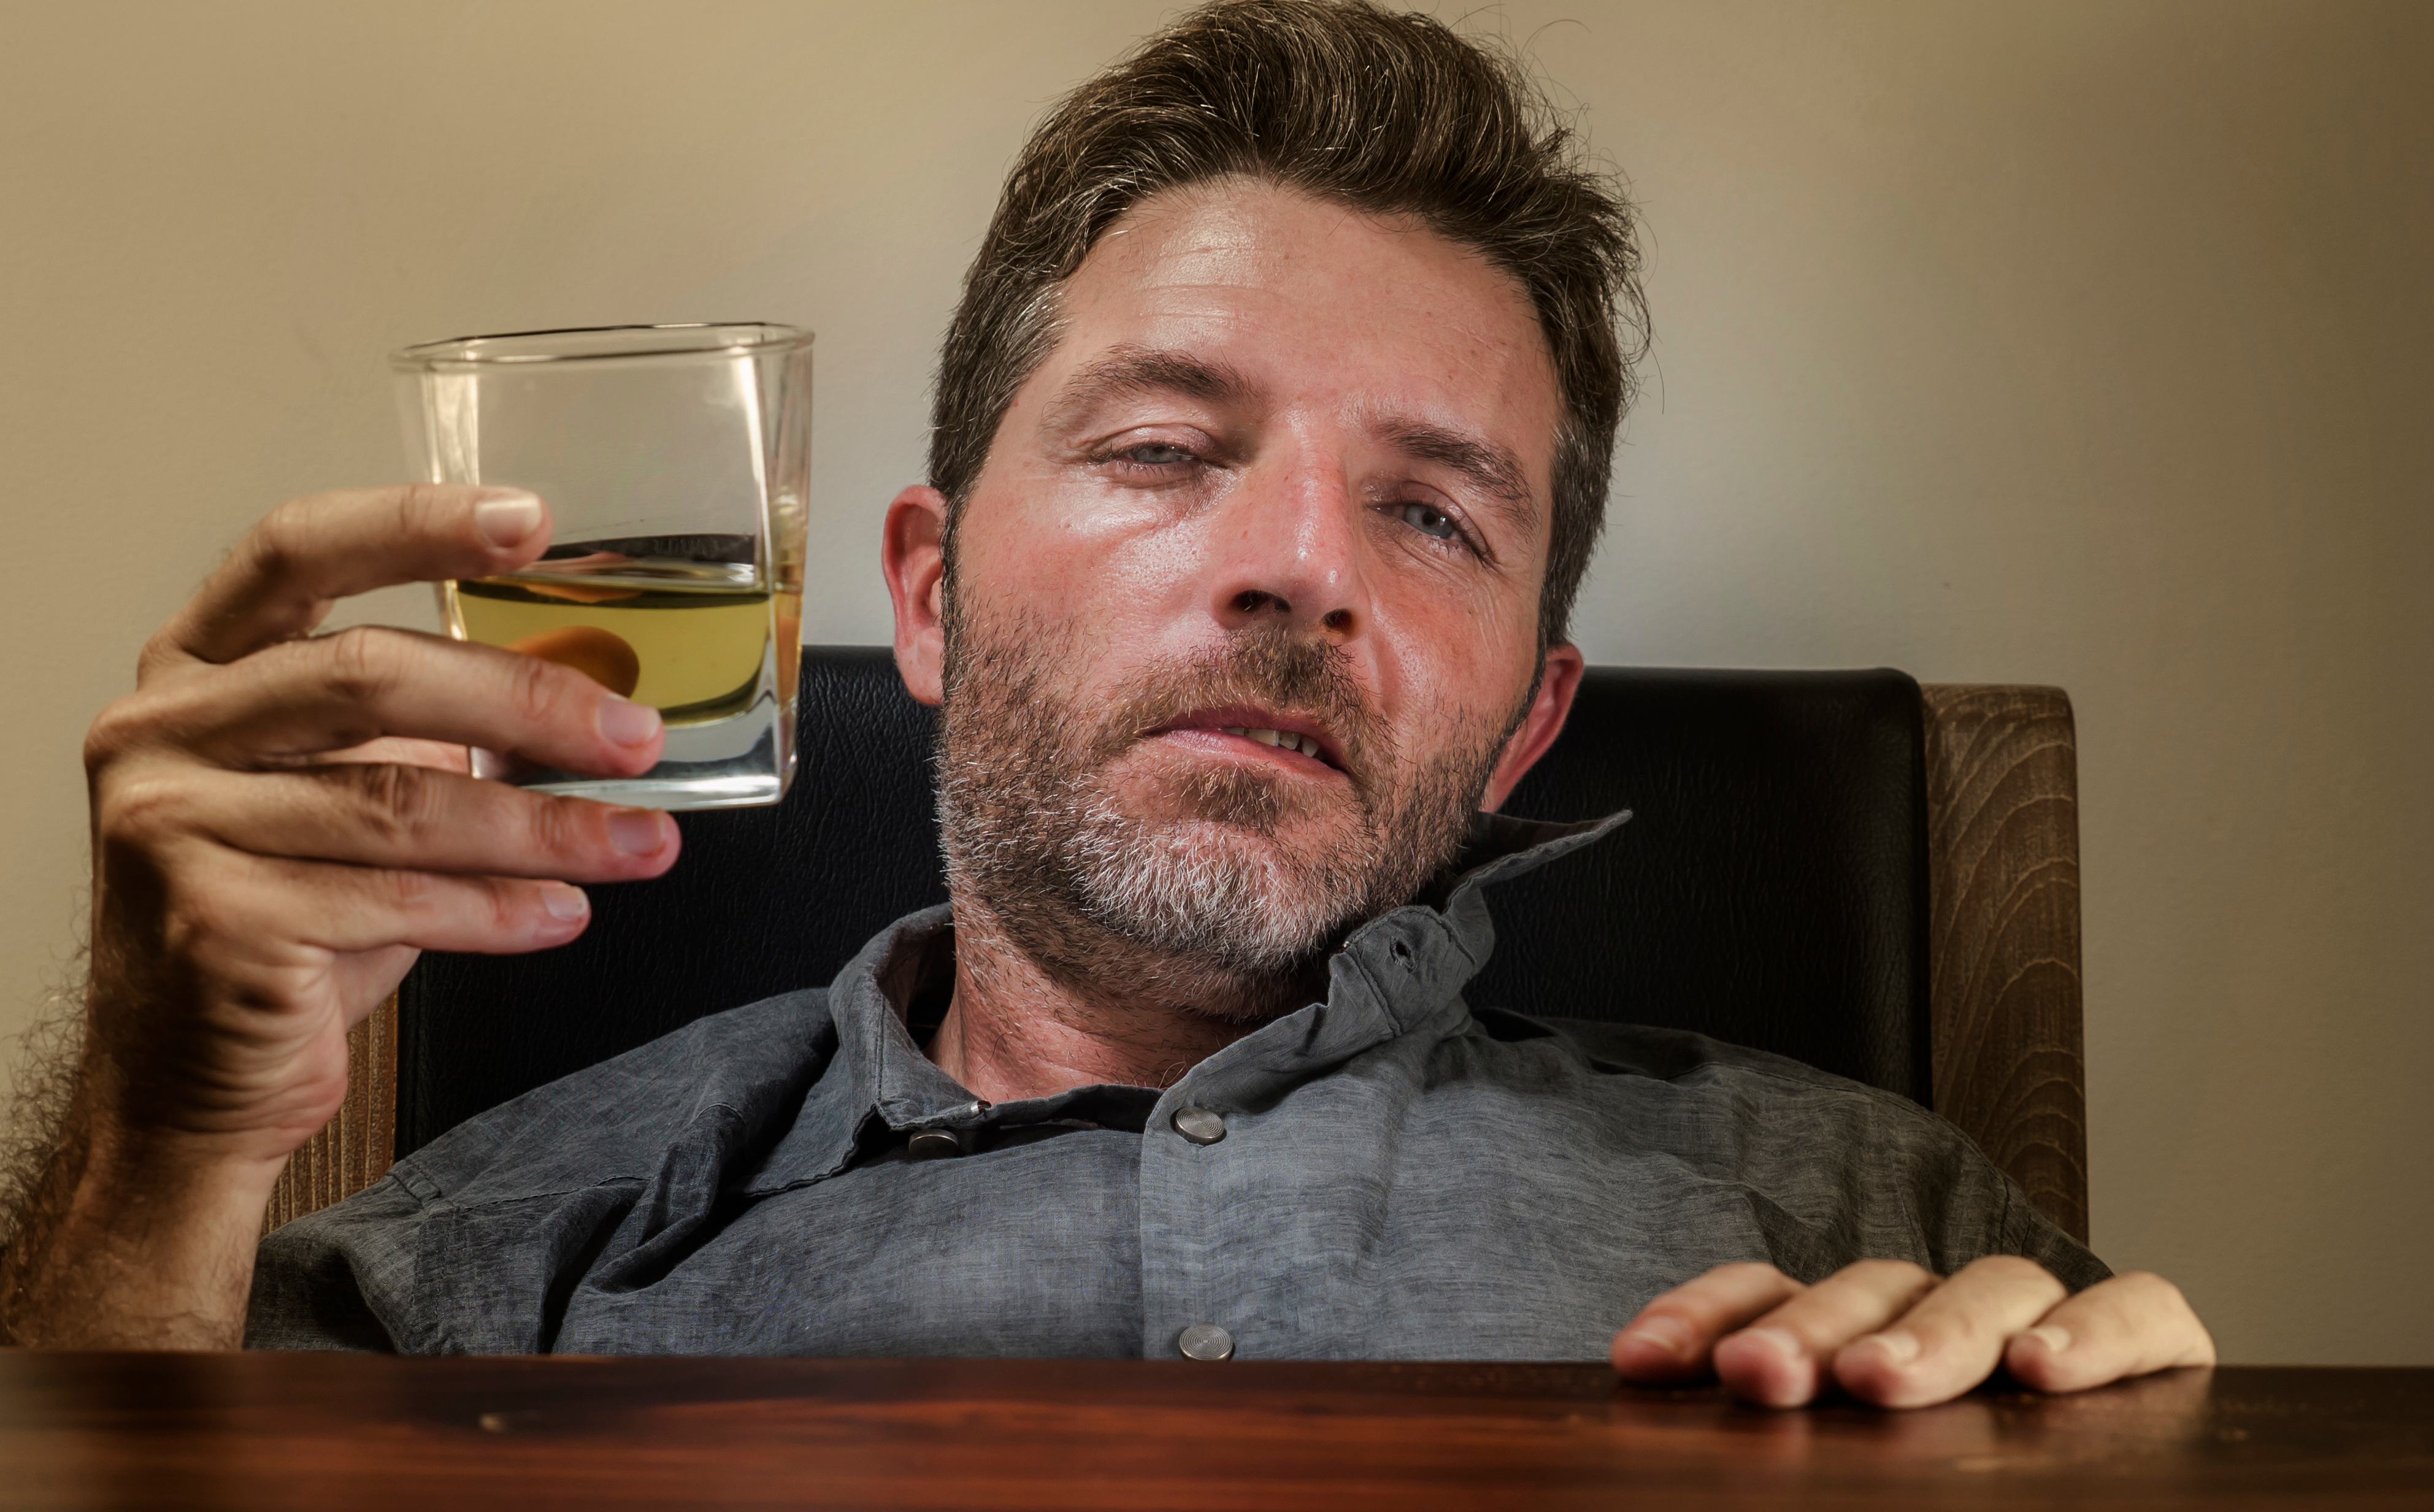 Homme ivre avec de l'alcool | Source : Shutterstock